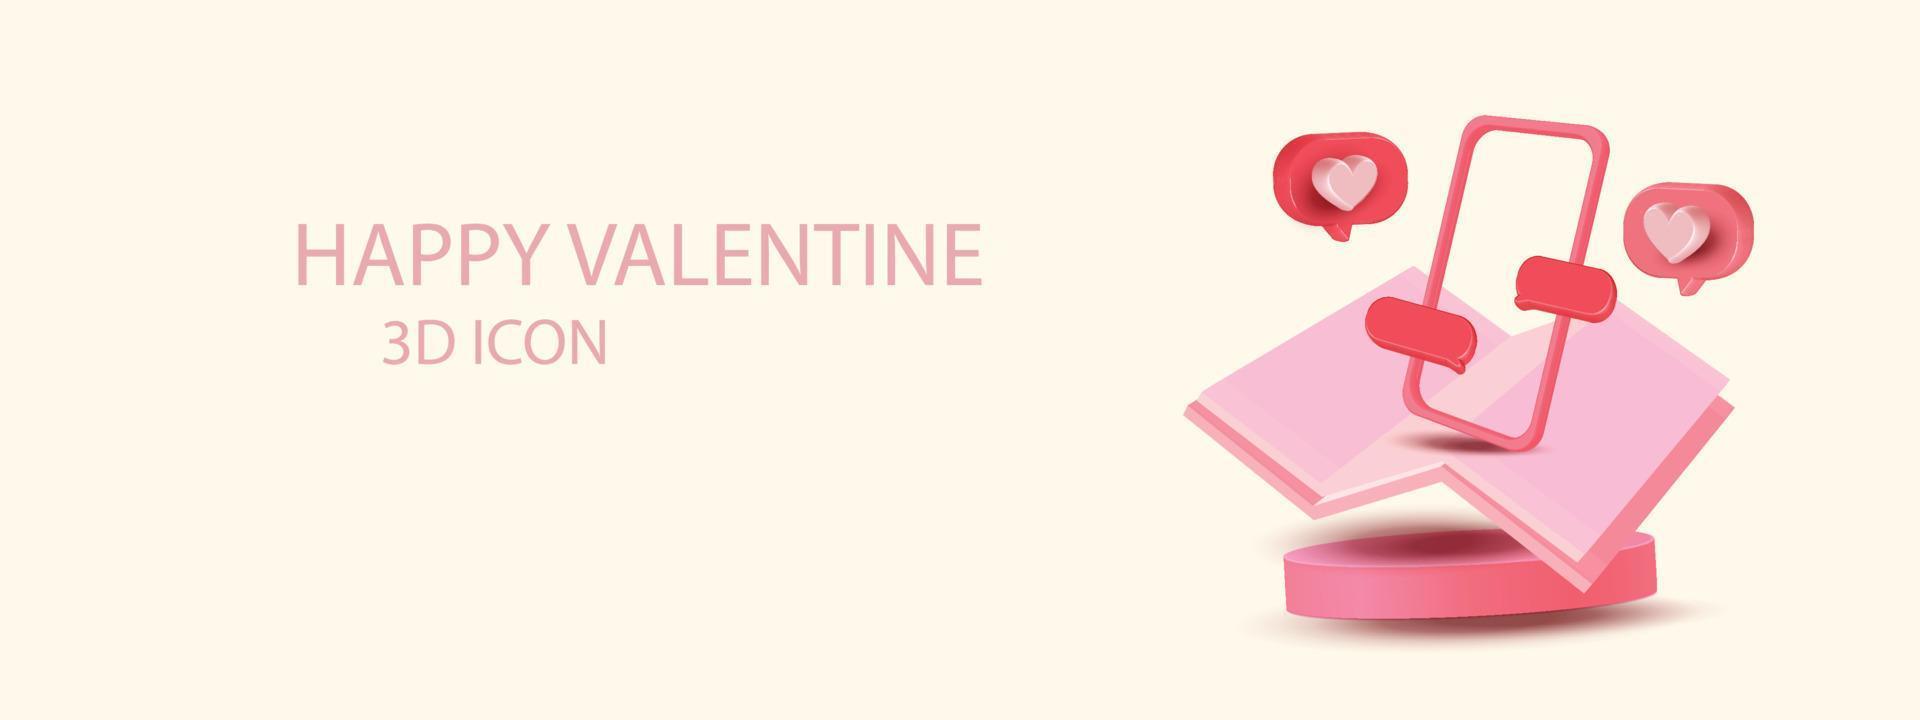 3d coeur et téléphone icône vecteur social valentine podium